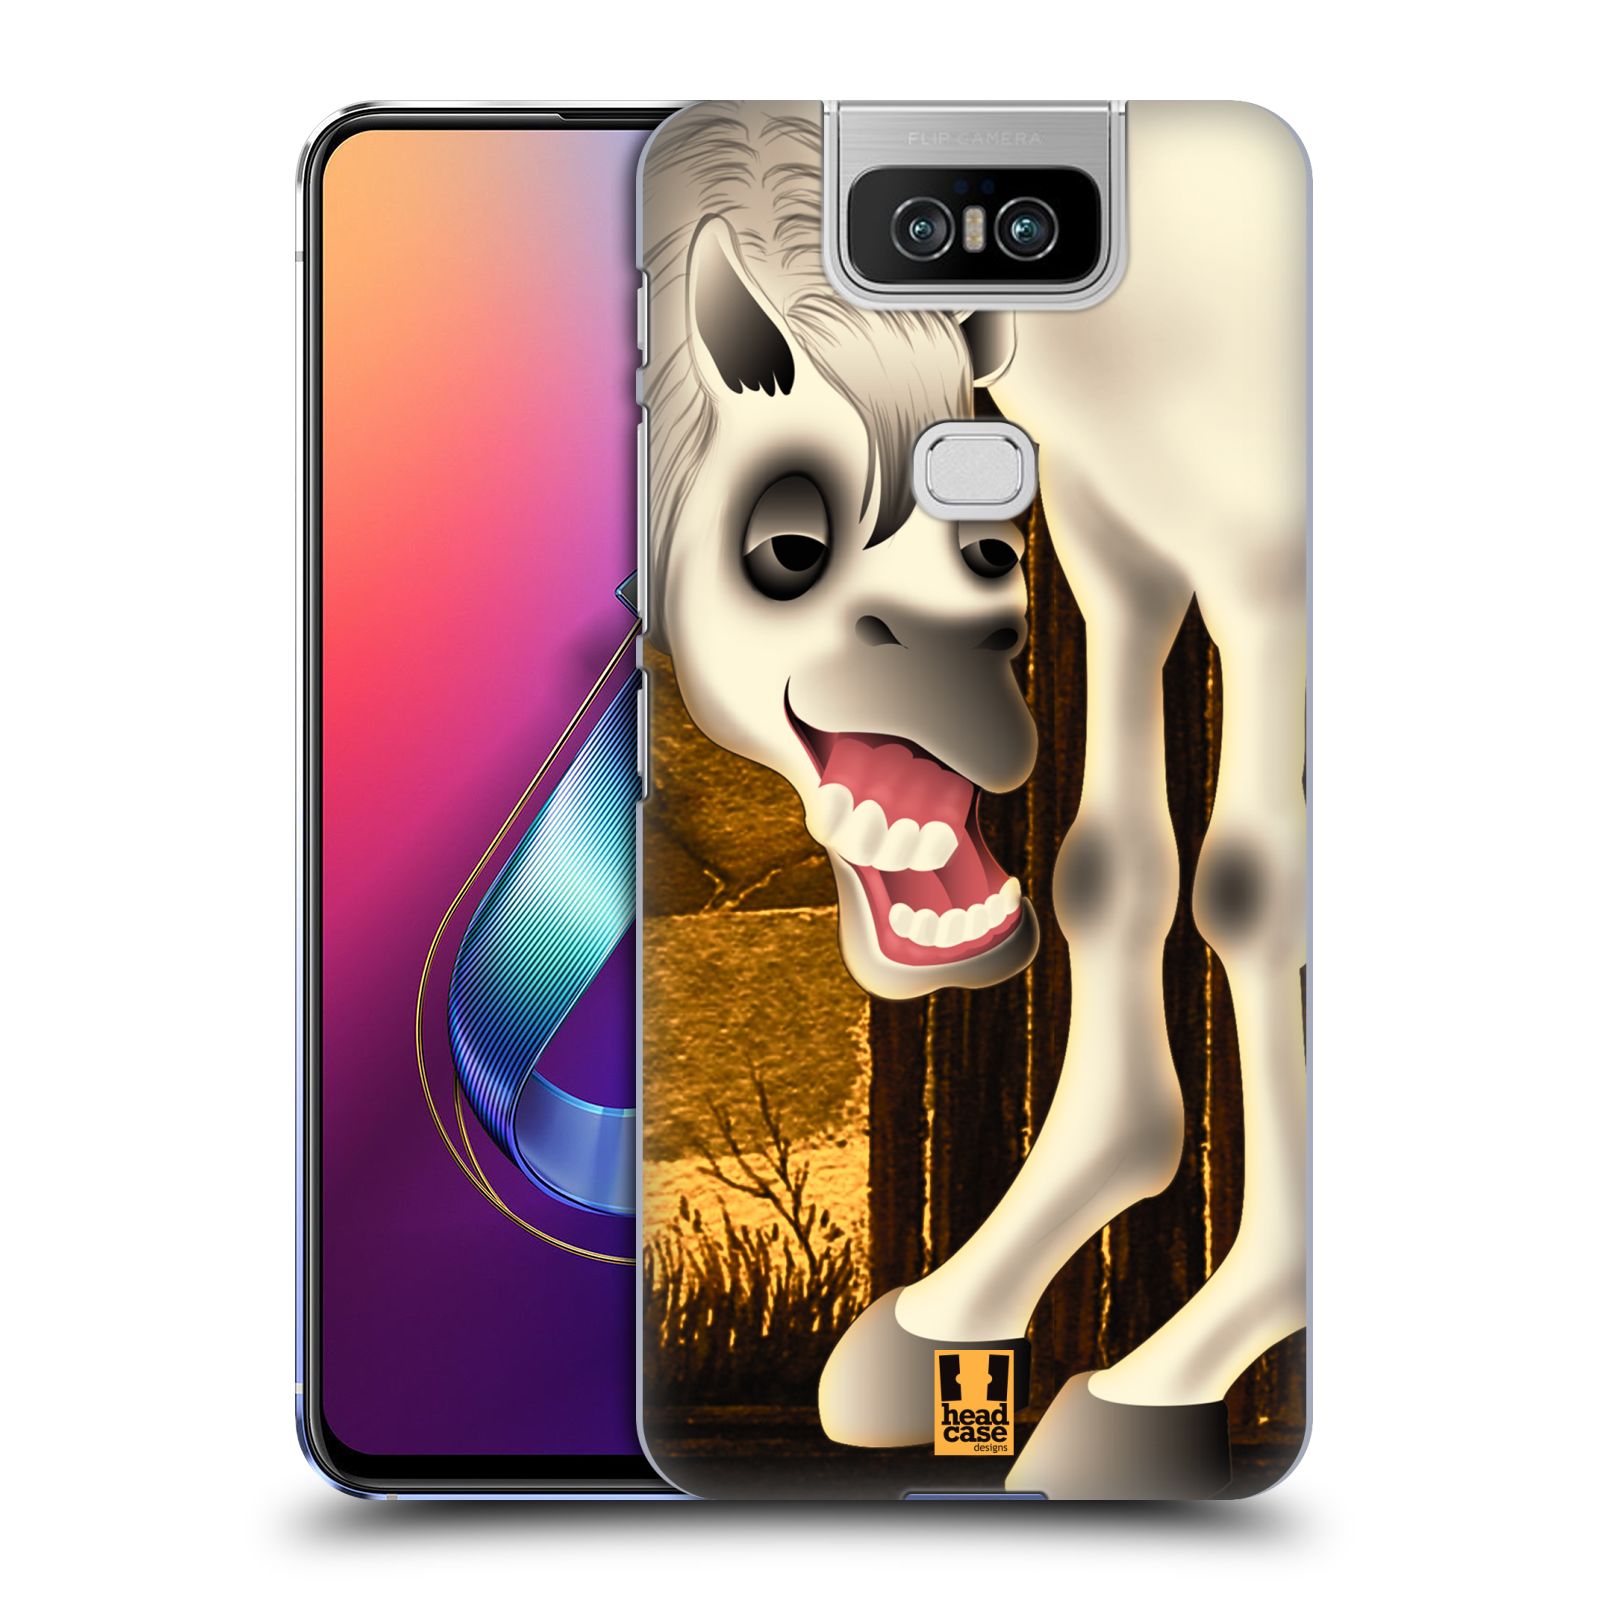 Pouzdro na mobil Asus Zenfone 6 ZS630KL - HEAD CASE - vzor dlouhé nohy kreslená zvířátka kůň